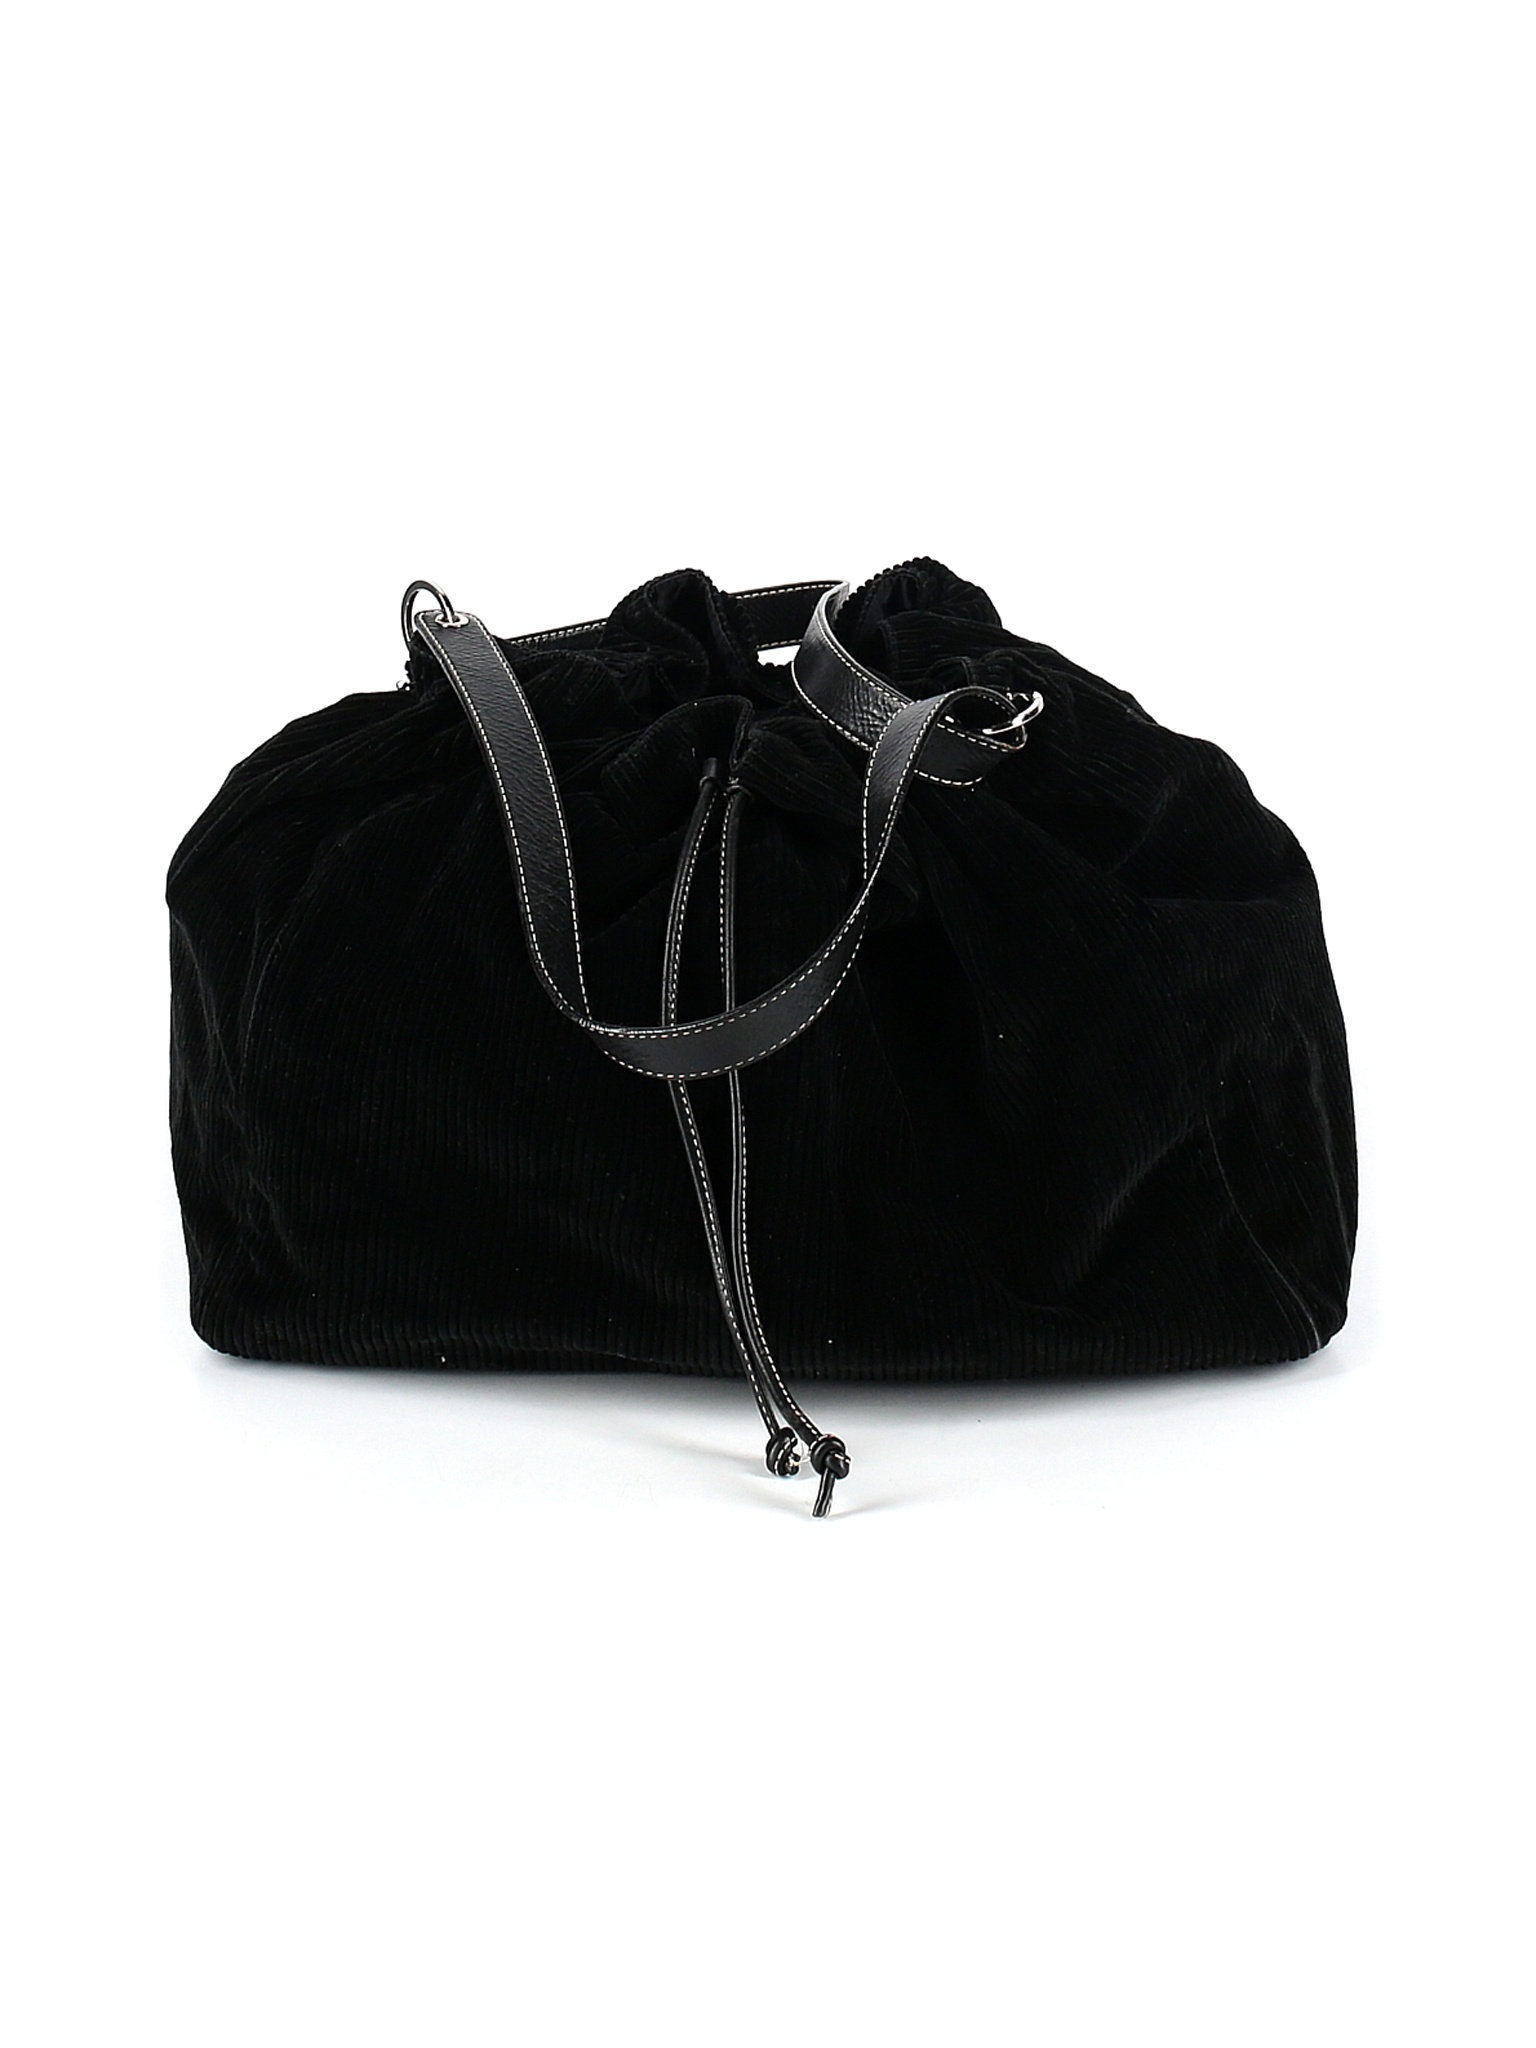 Kate Spade New York Graphic Solid Black Shoulder Bag One Size - 89% off